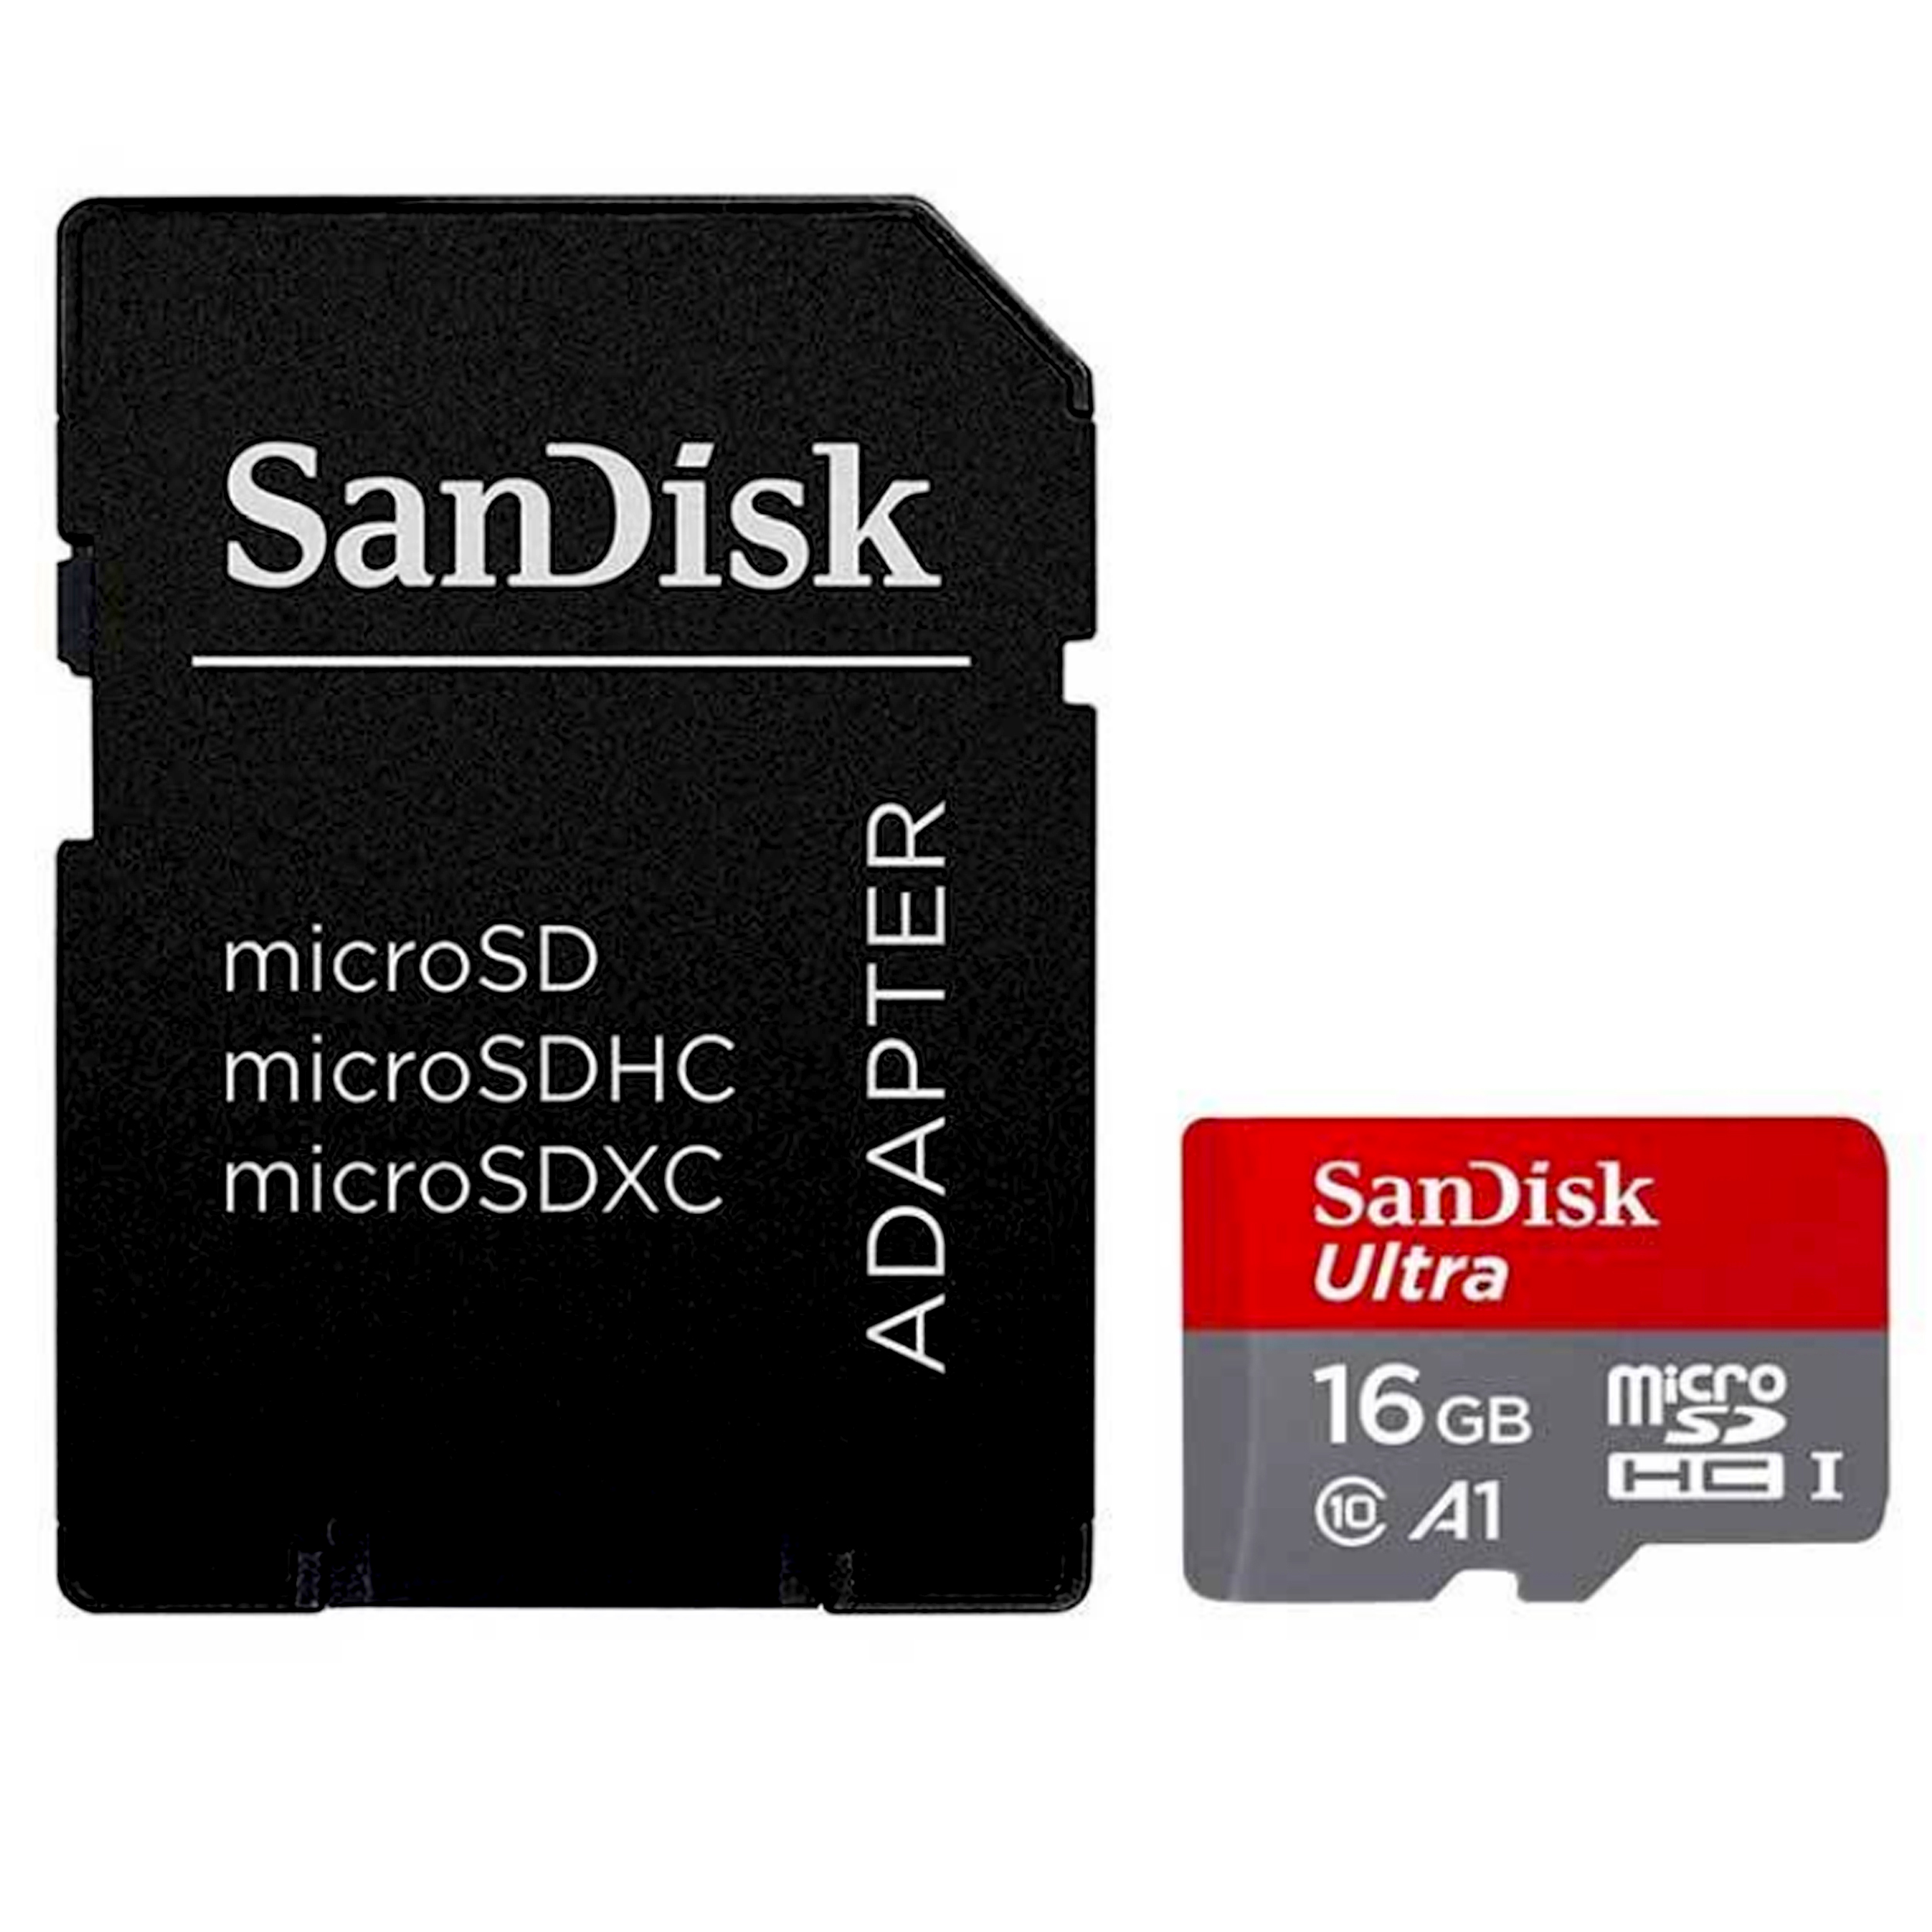 کارت حافظه microSDHC مدل Ultra کلاس 10 استاندارد UHS-I U1 سرعت 98MBps ظرفیت 16 گیگابایت به همراه آداپتور SD